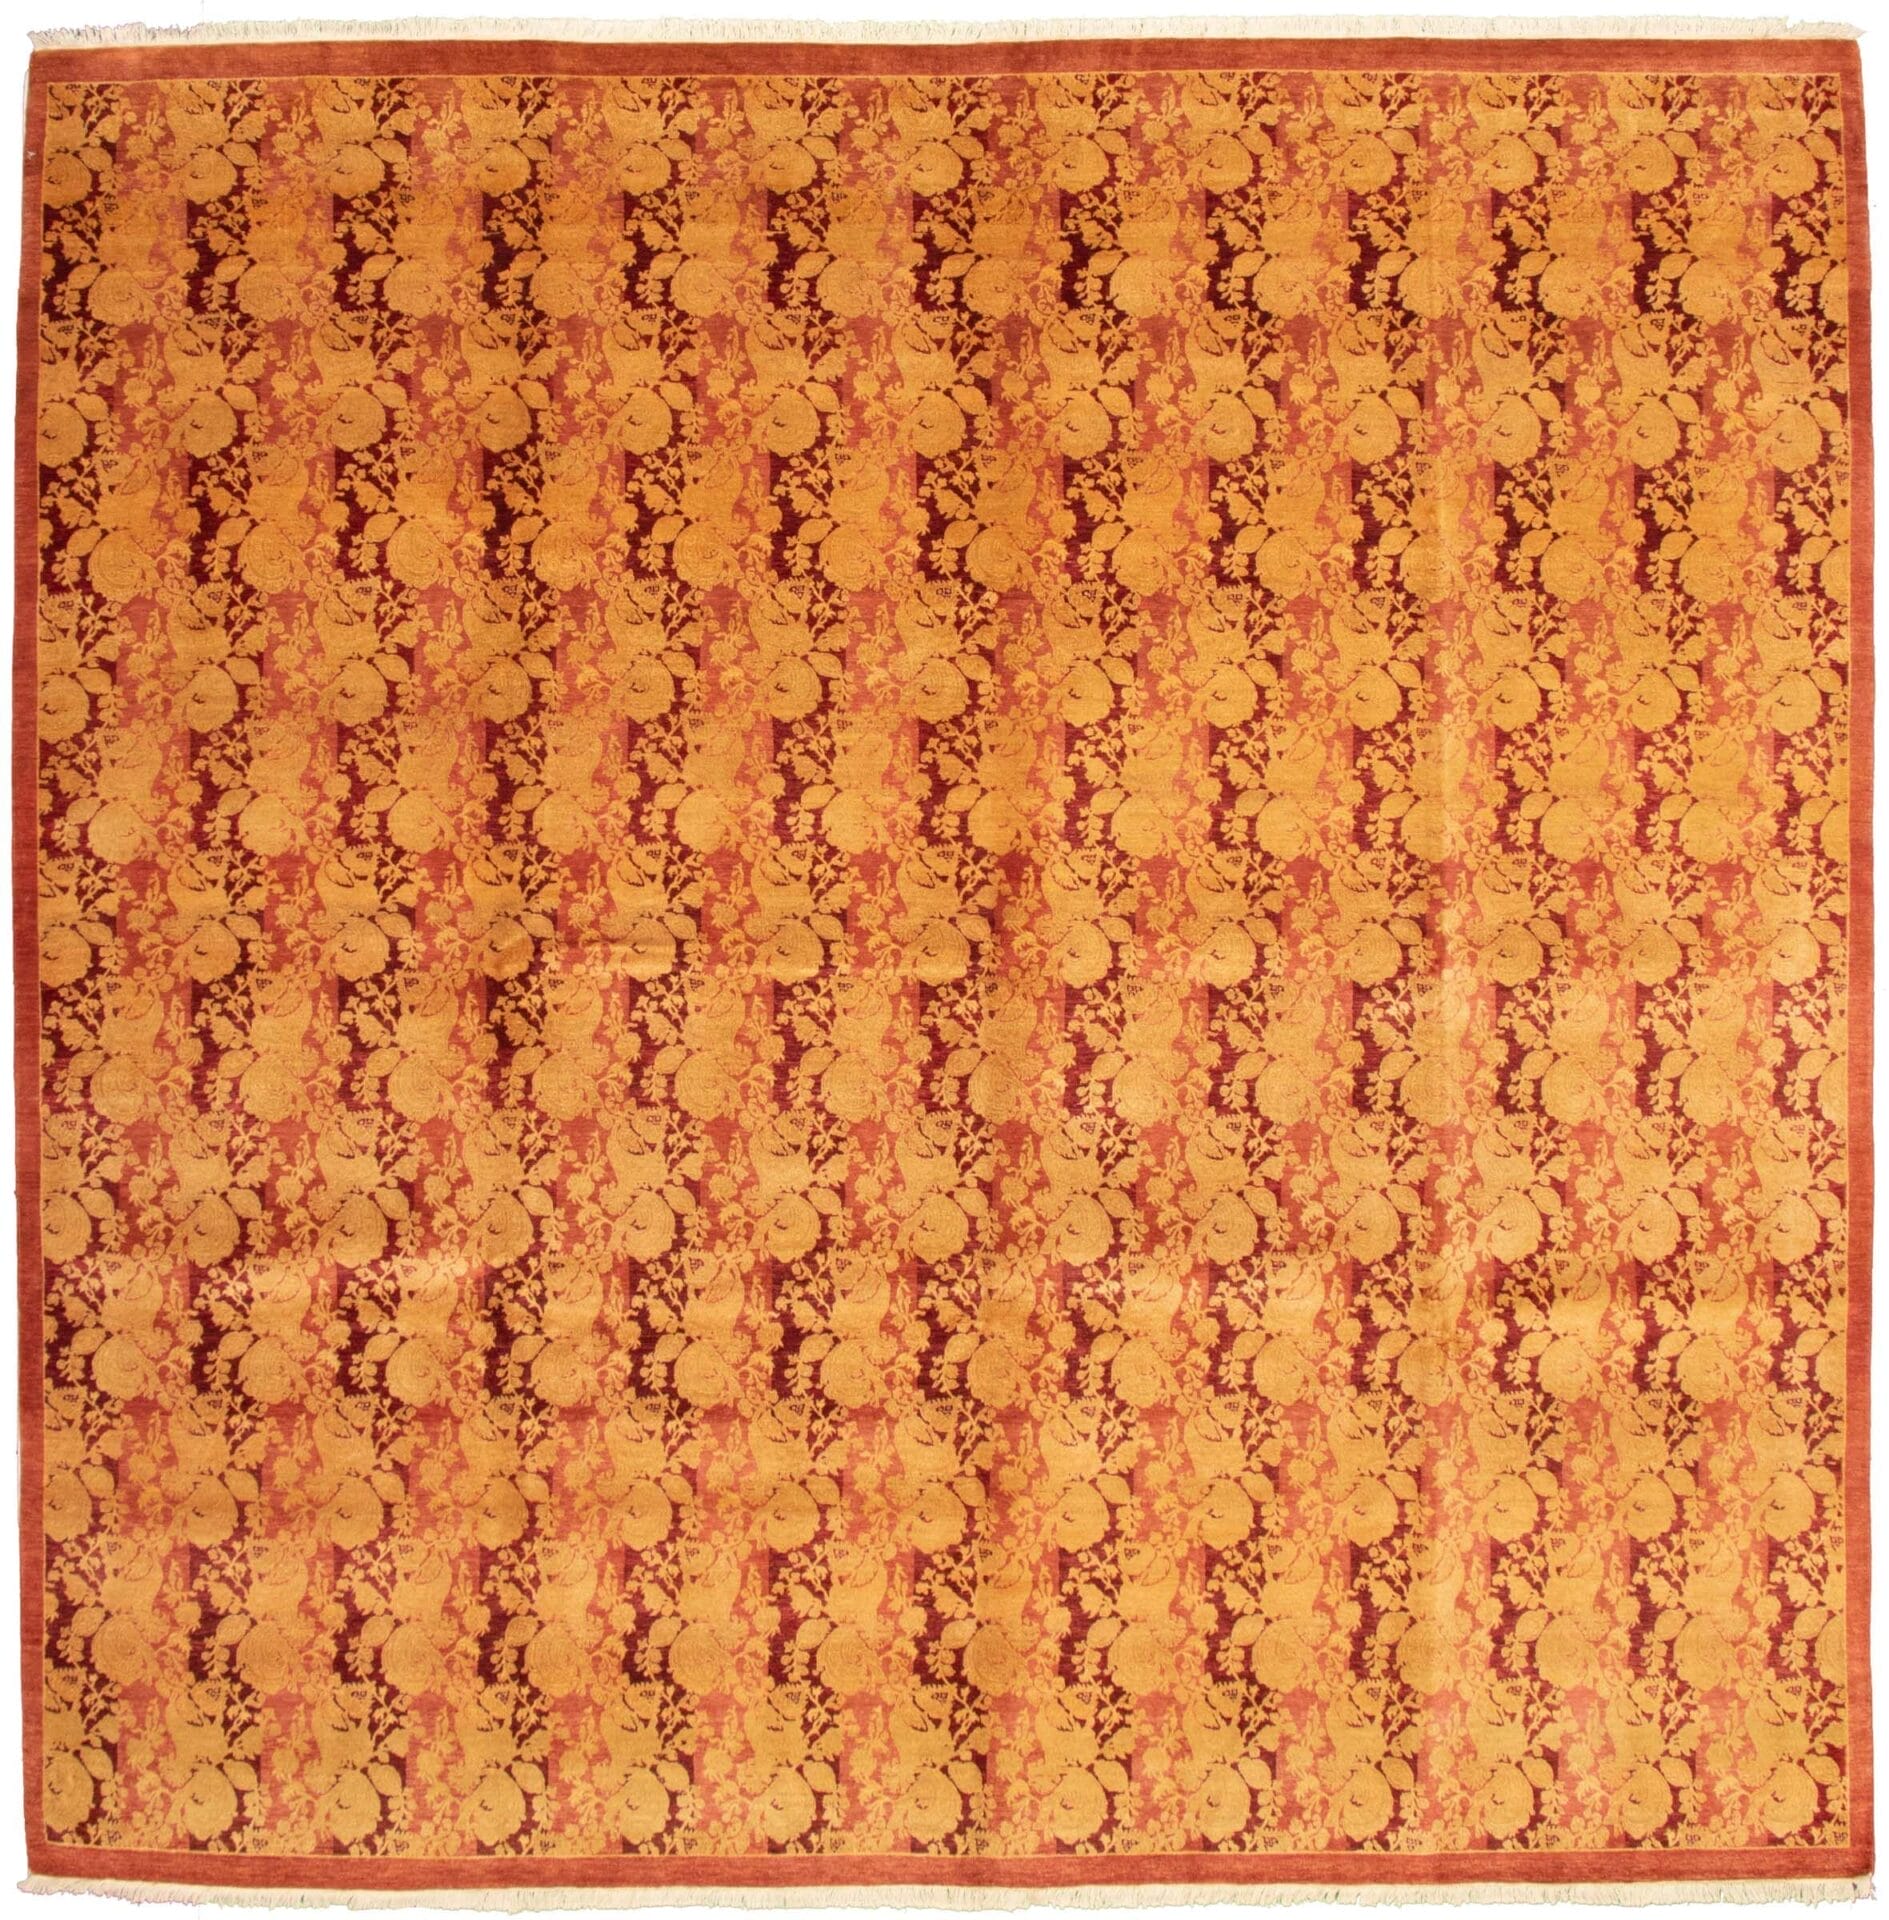 Beschrijving: Een oranje en bruin tapijt met een bloemenpatroon.